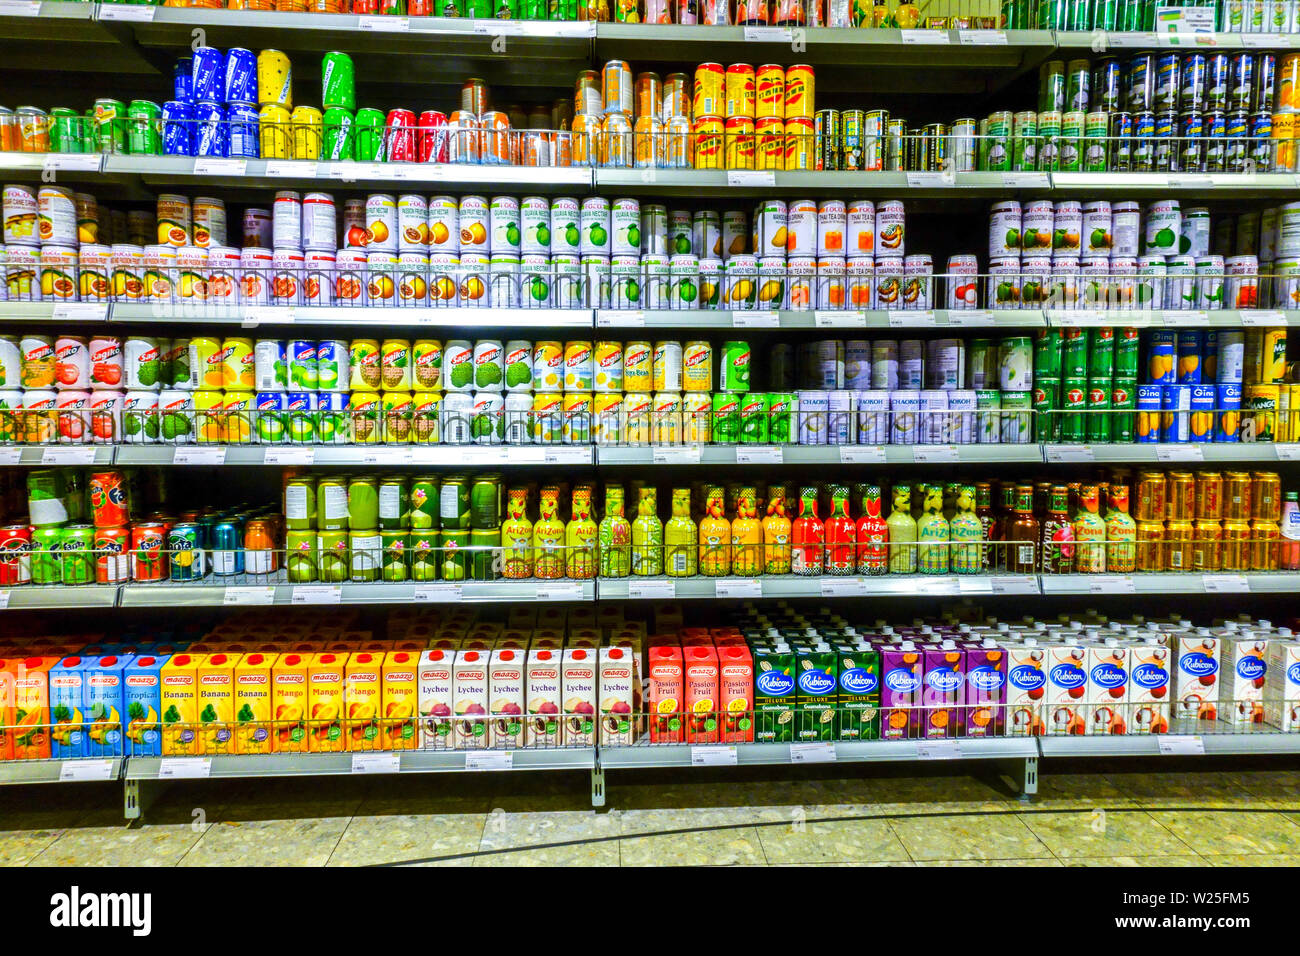 Asiatischen Supermarkt "Go Asia" Regale im Supermarkt, Obst Getränkedosen, Dresden, Deutschland Stockfoto